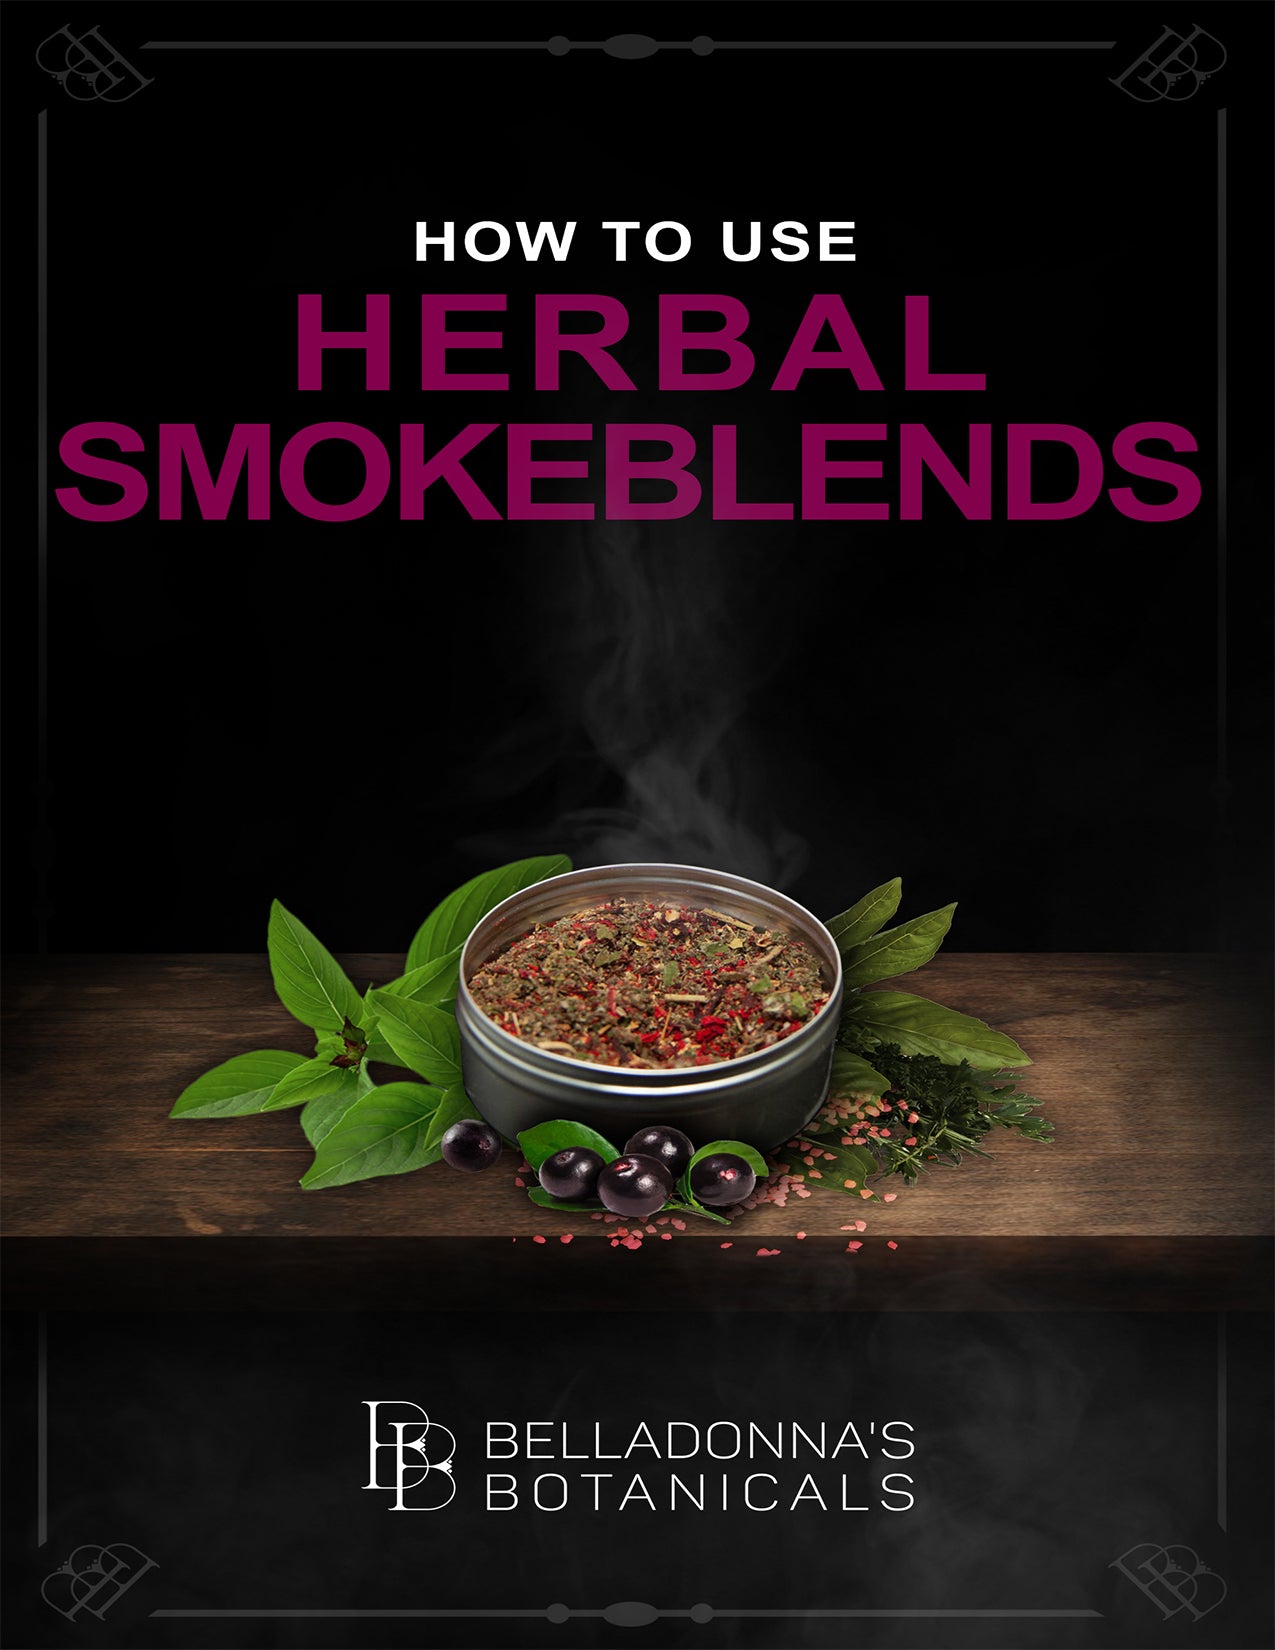 Made to Order Herbal Smoke Blends